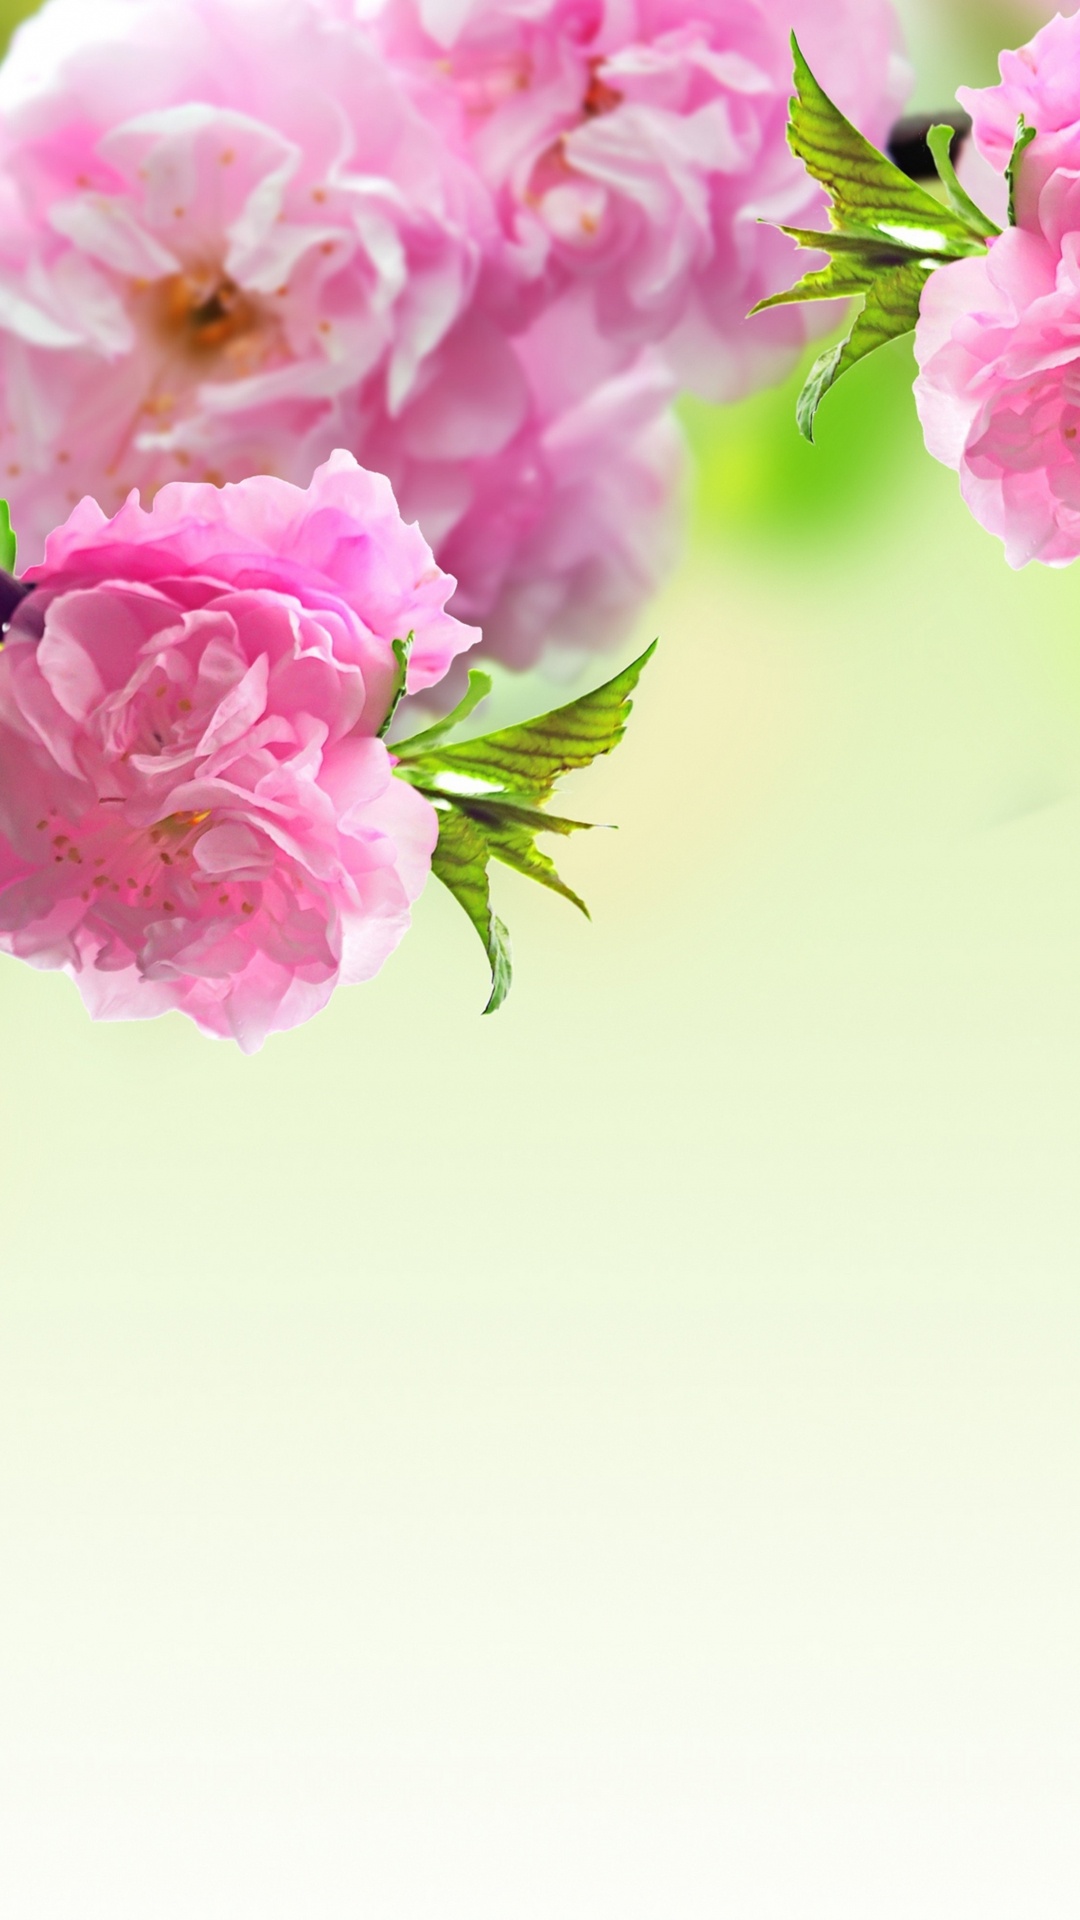 弹簧, 粉红色, 开花, 显花植物, 手持设备 壁纸 1080x1920 允许